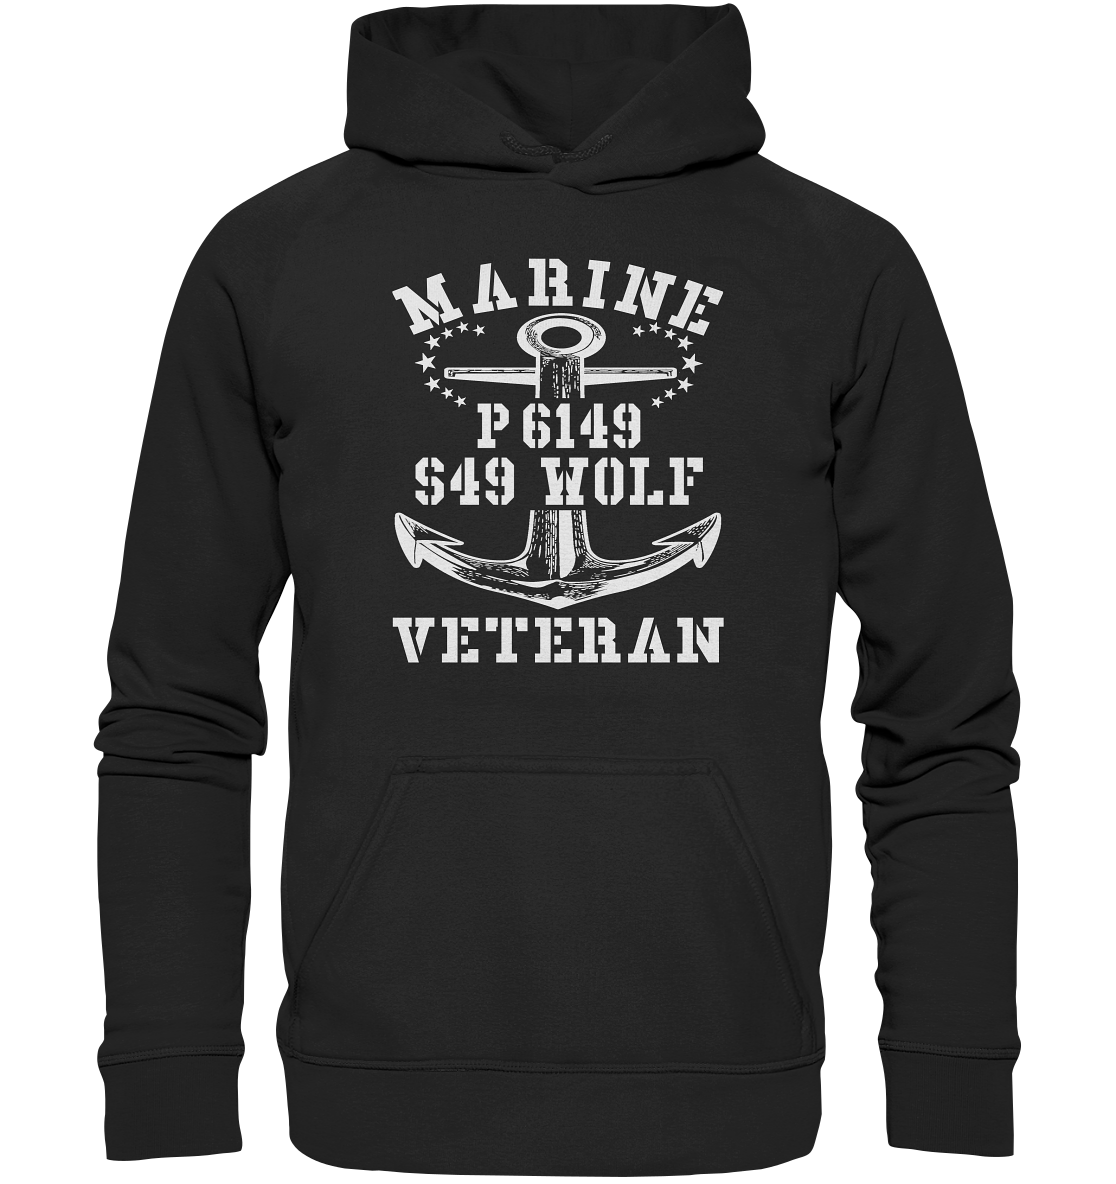 P6149 S49 WOLF Marine Veteran - Basic Unisex Hoodie